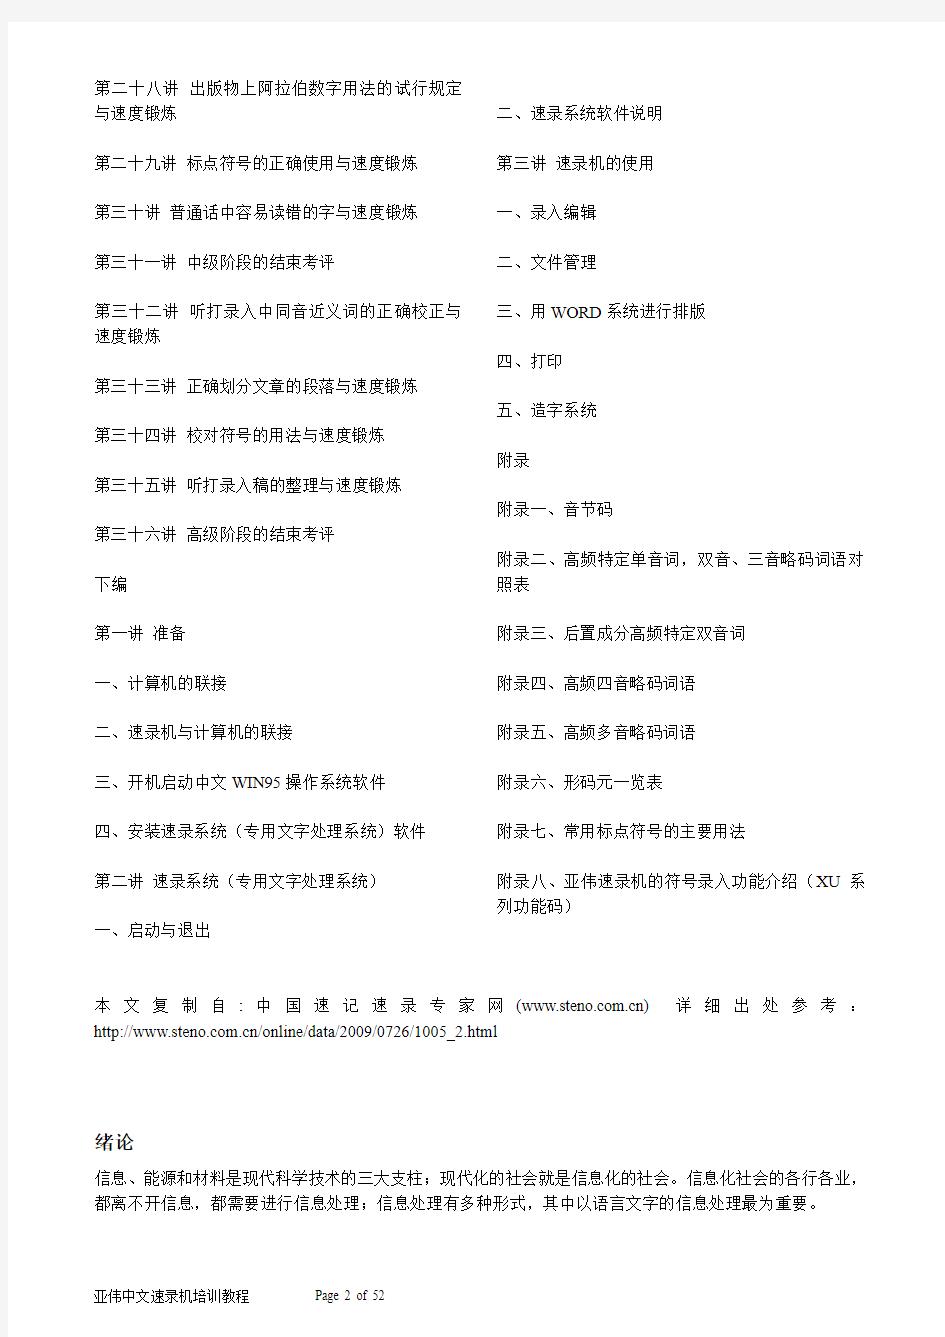 亚伟中文速录机培训教程(收集版)